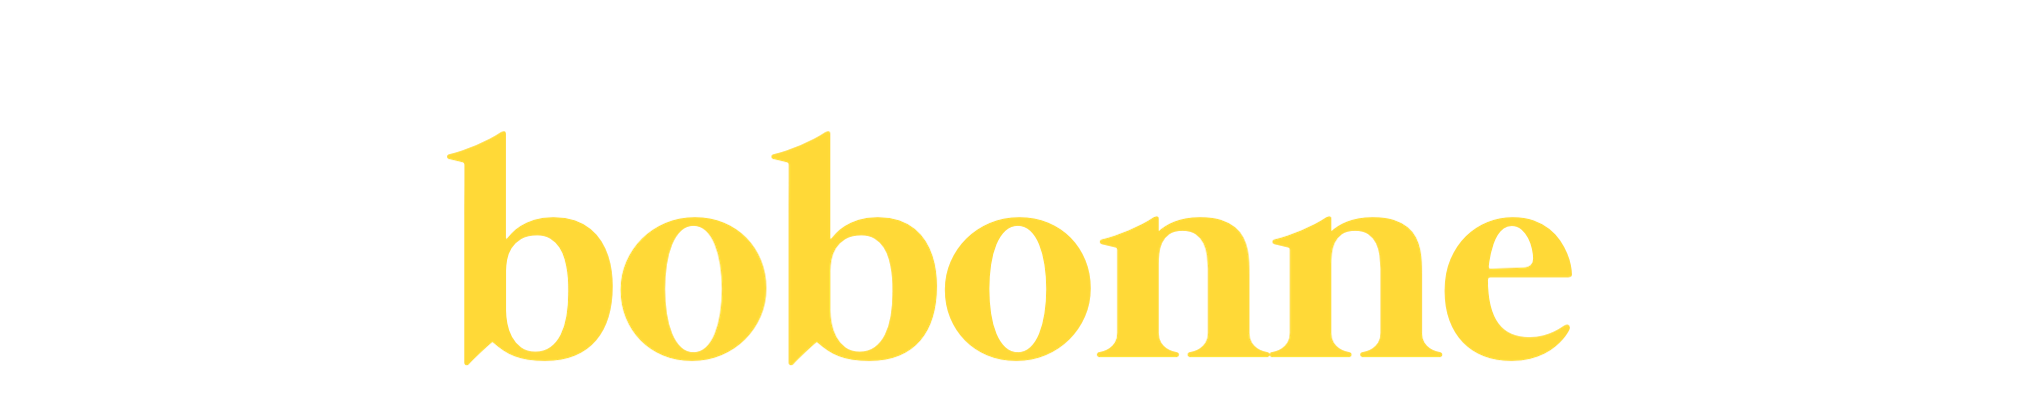 Bobonne